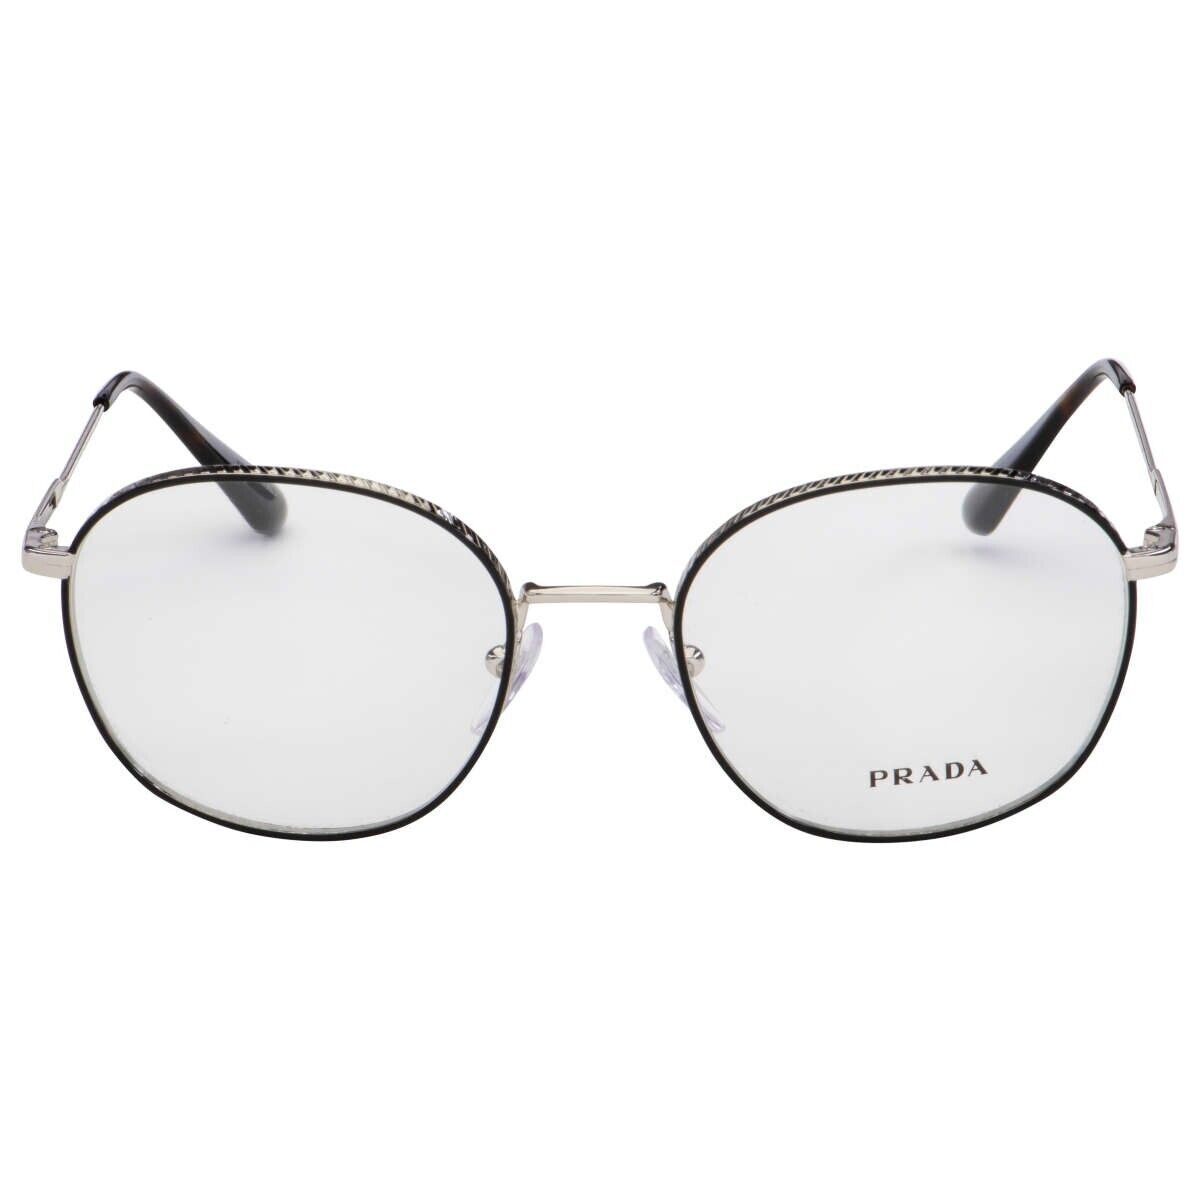 Prada Eyeglasses Frames PR 52WV 524-1O1 52-19-145 Silver / Black Made in Italy